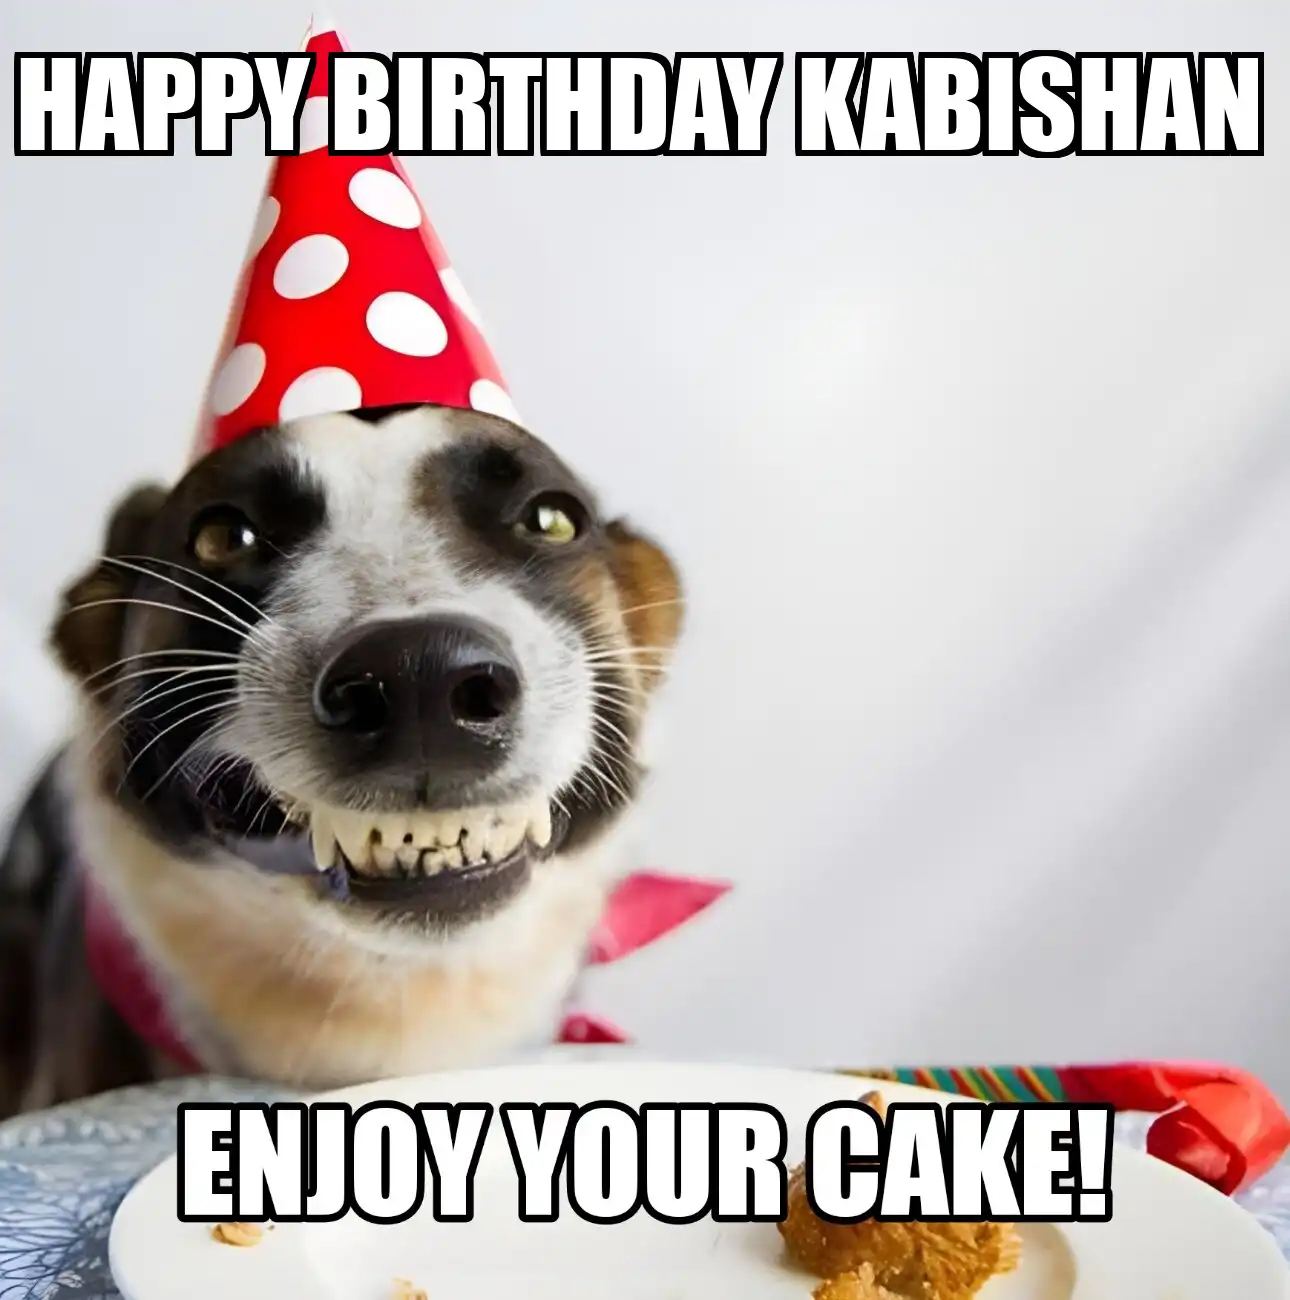 Happy Birthday Kabishan Enjoy Your Cake Dog Meme